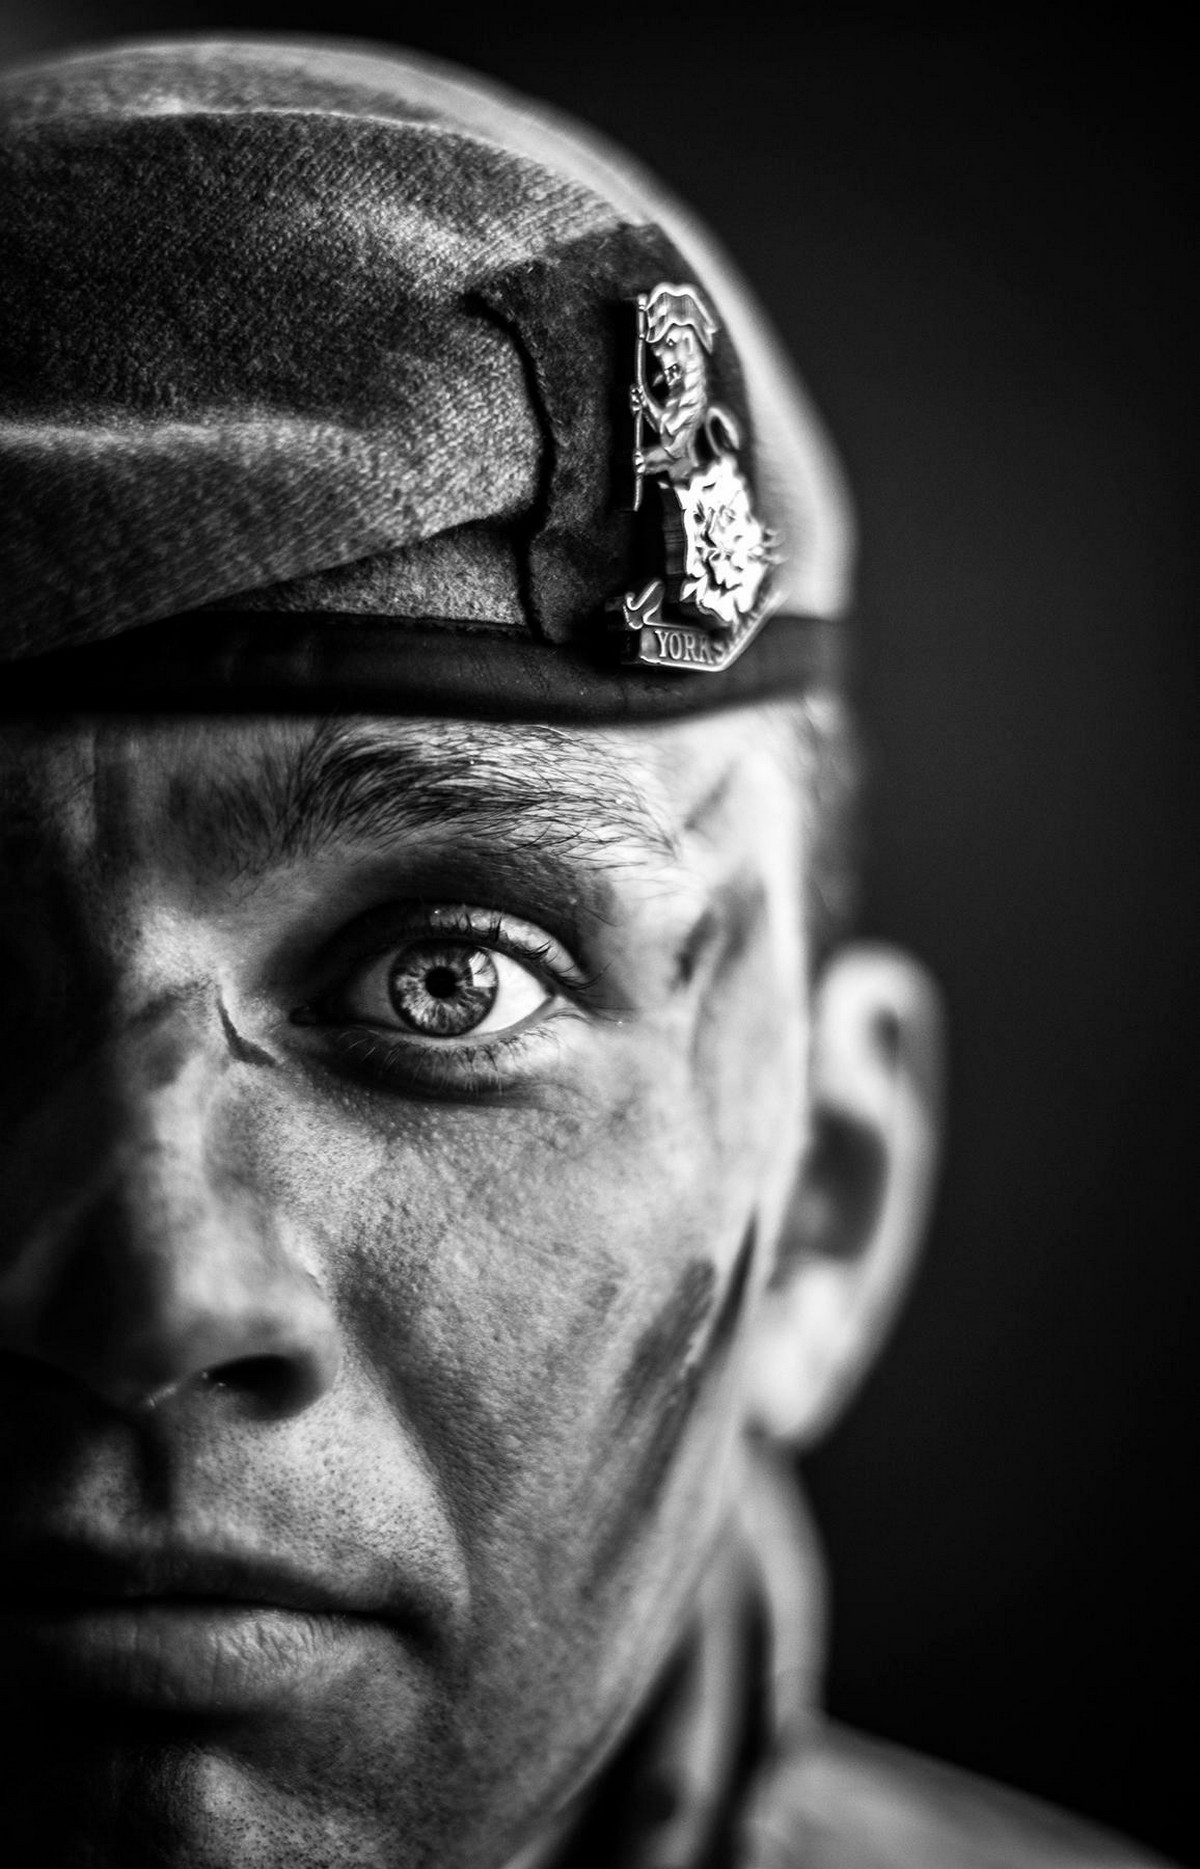 Британские солдаты на лучших работах конкурса военной фотографии